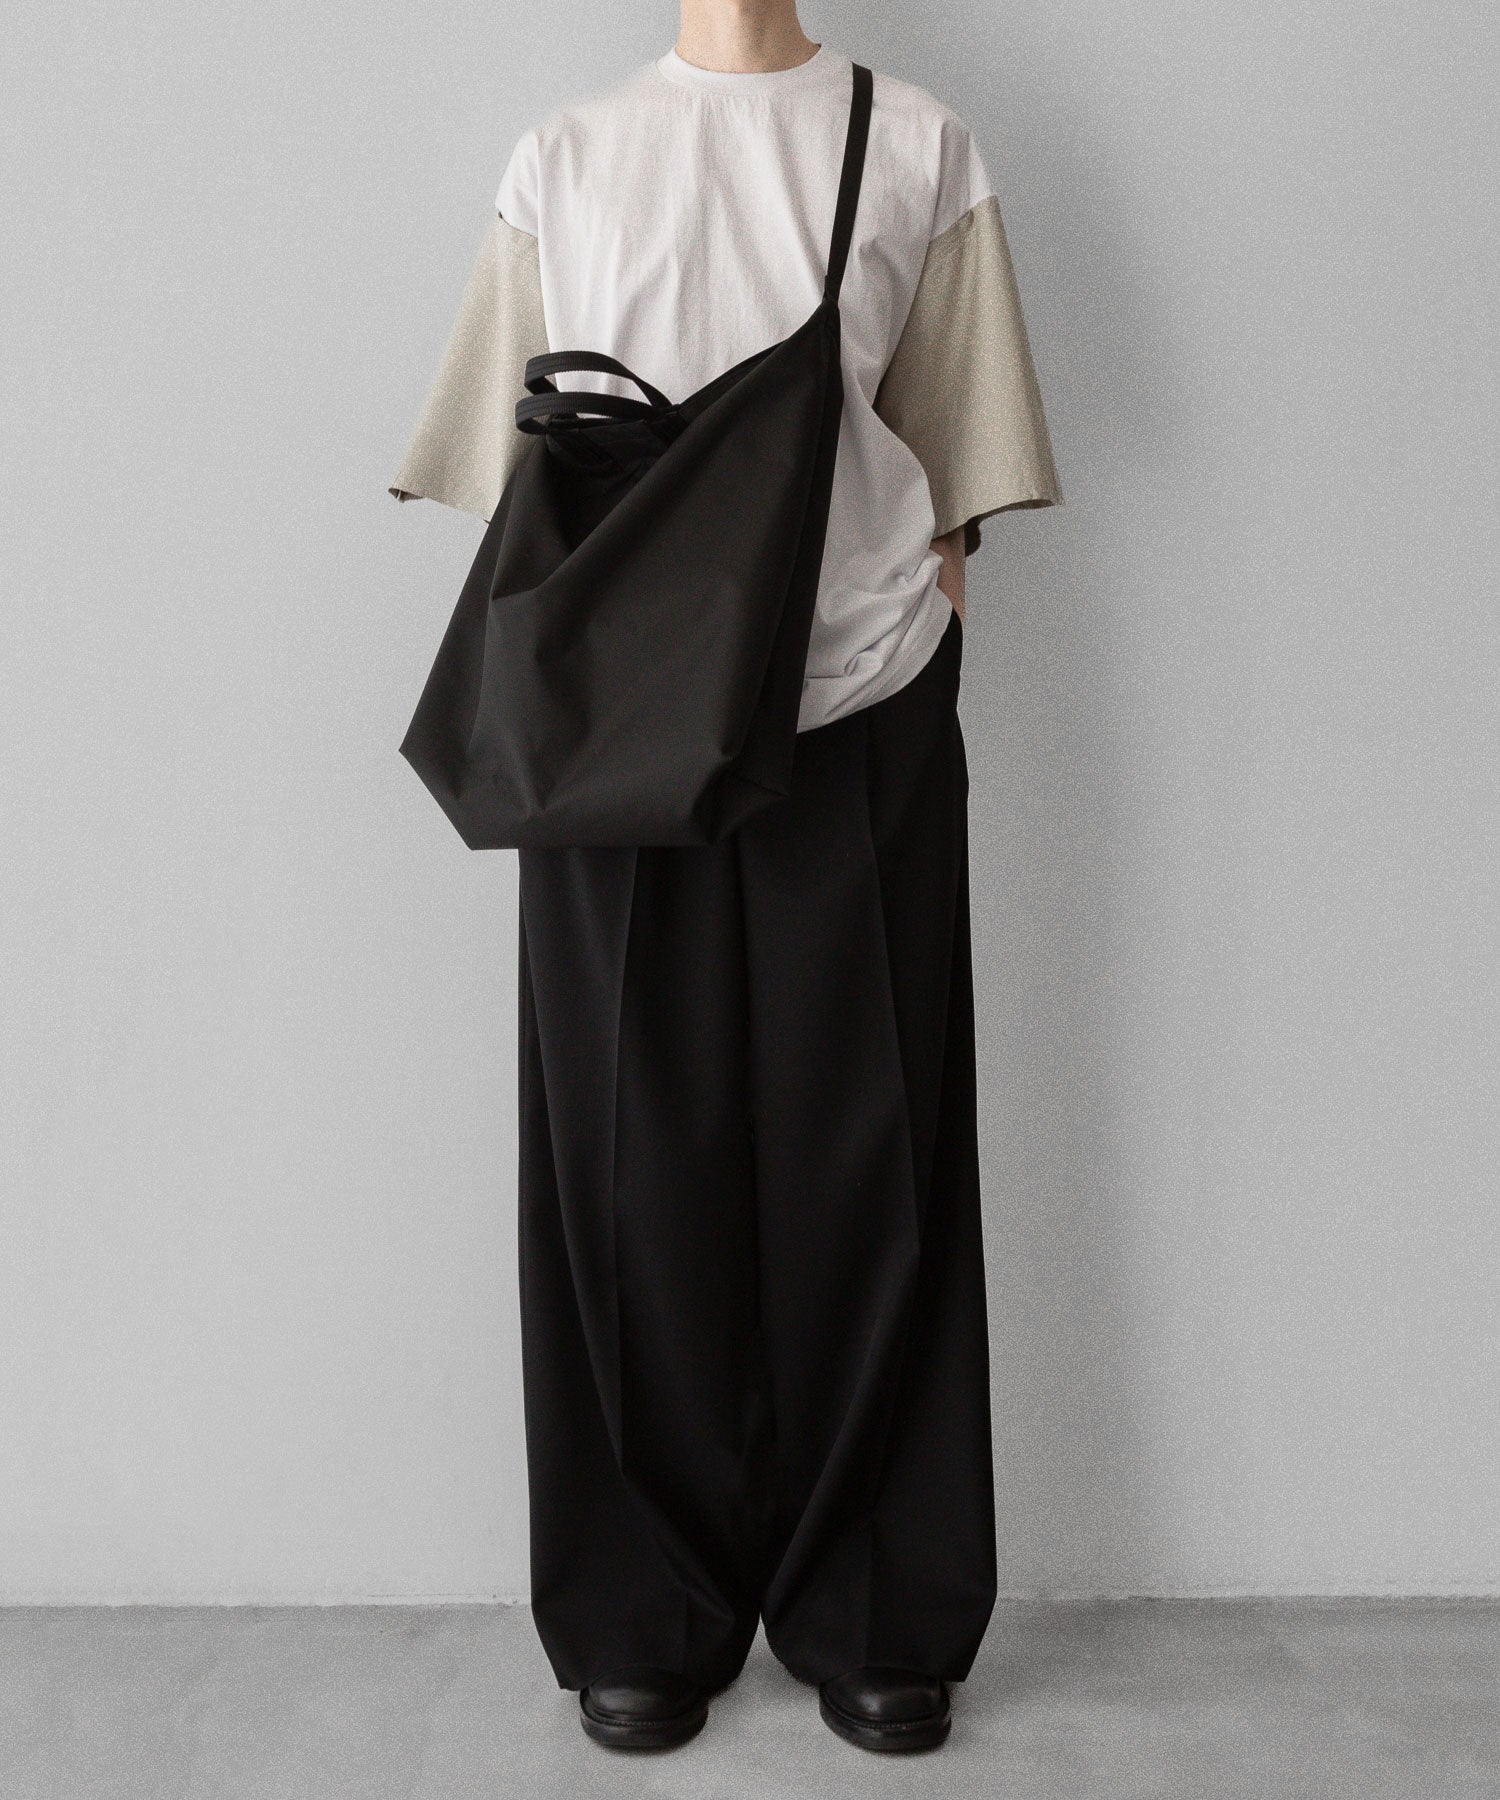 【 i'm here 】アイムヒアーのWashable Leather Sleeve : T-SHIRT - WHITE 公式通販サイト session福岡セレクトショップ